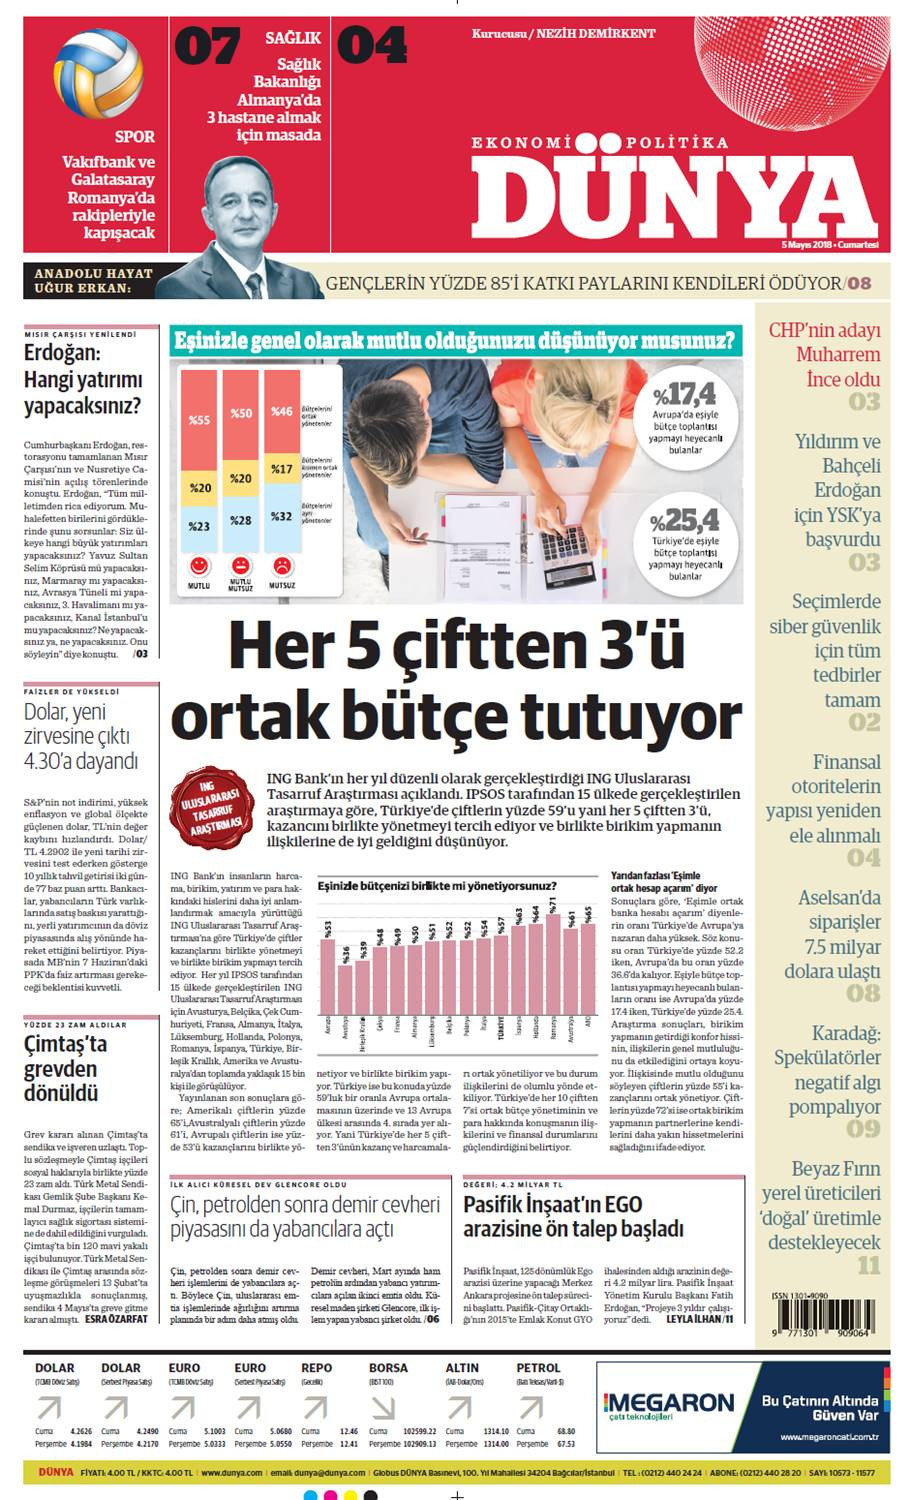 Günün gazete manşetleri (5 Mayıs 2018) - Sayfa 1